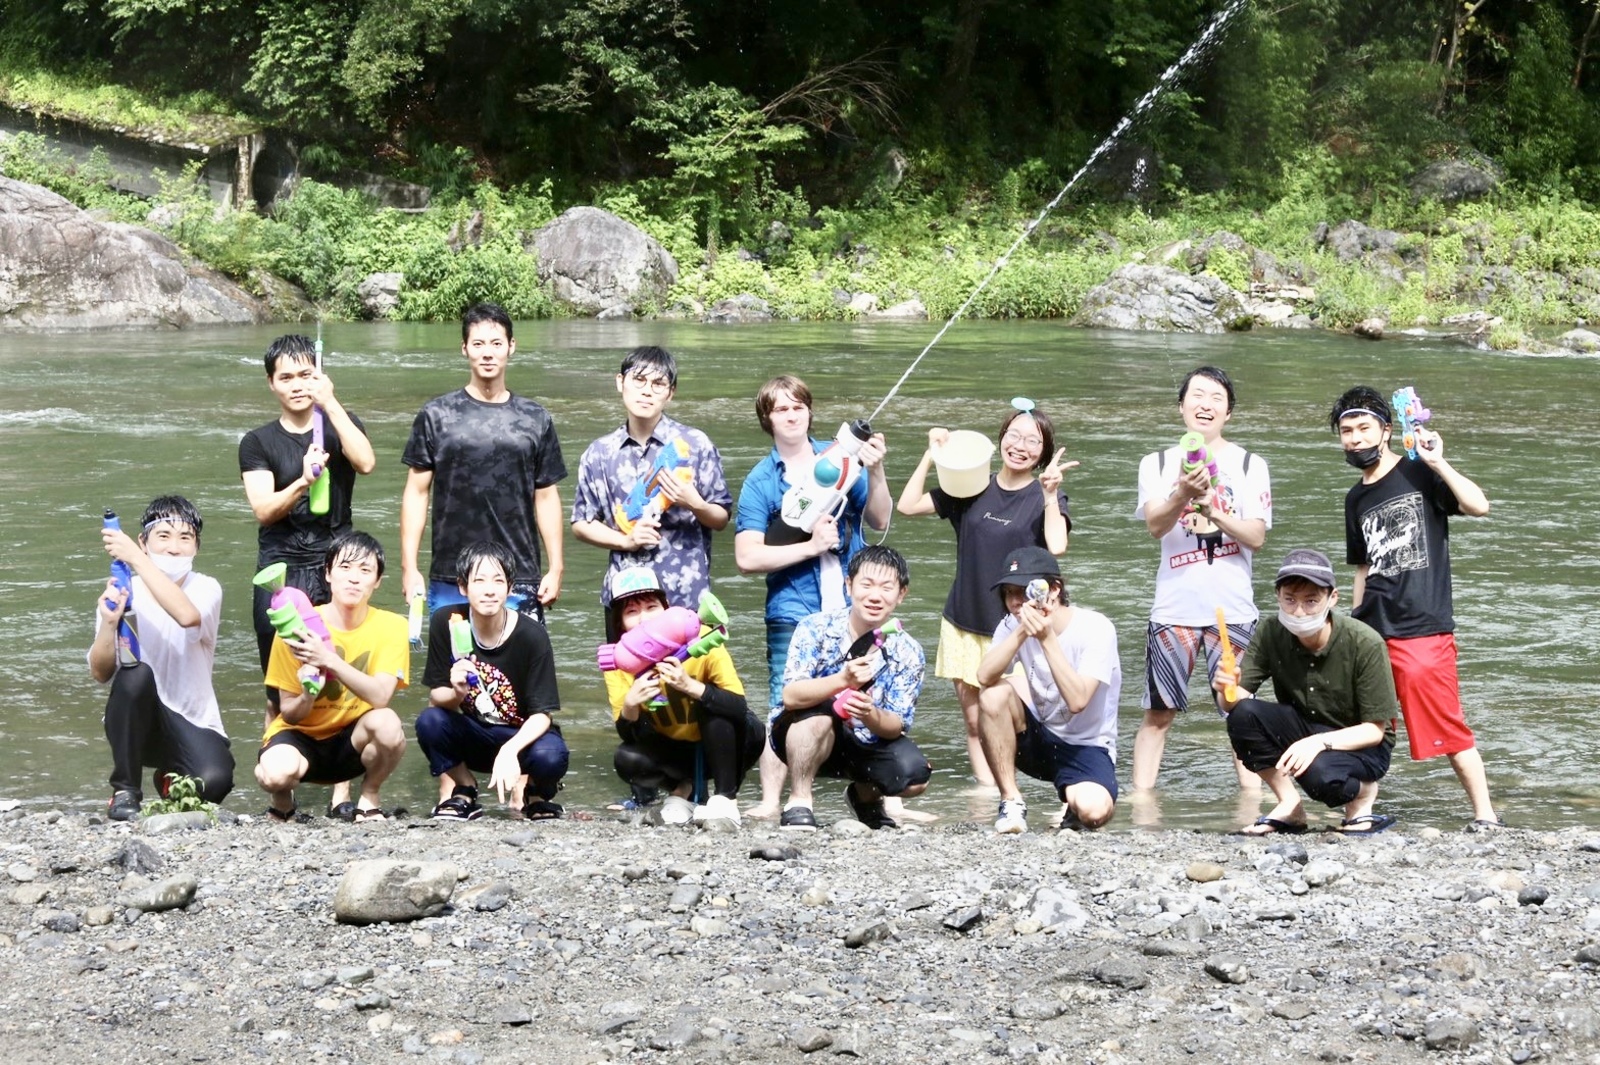 【中止】夏の特大企画🏖 多摩川上流でみんなで川遊びをしよう！ 〜スーパーイカした武器で的を狙え！🏄‍♂️〜